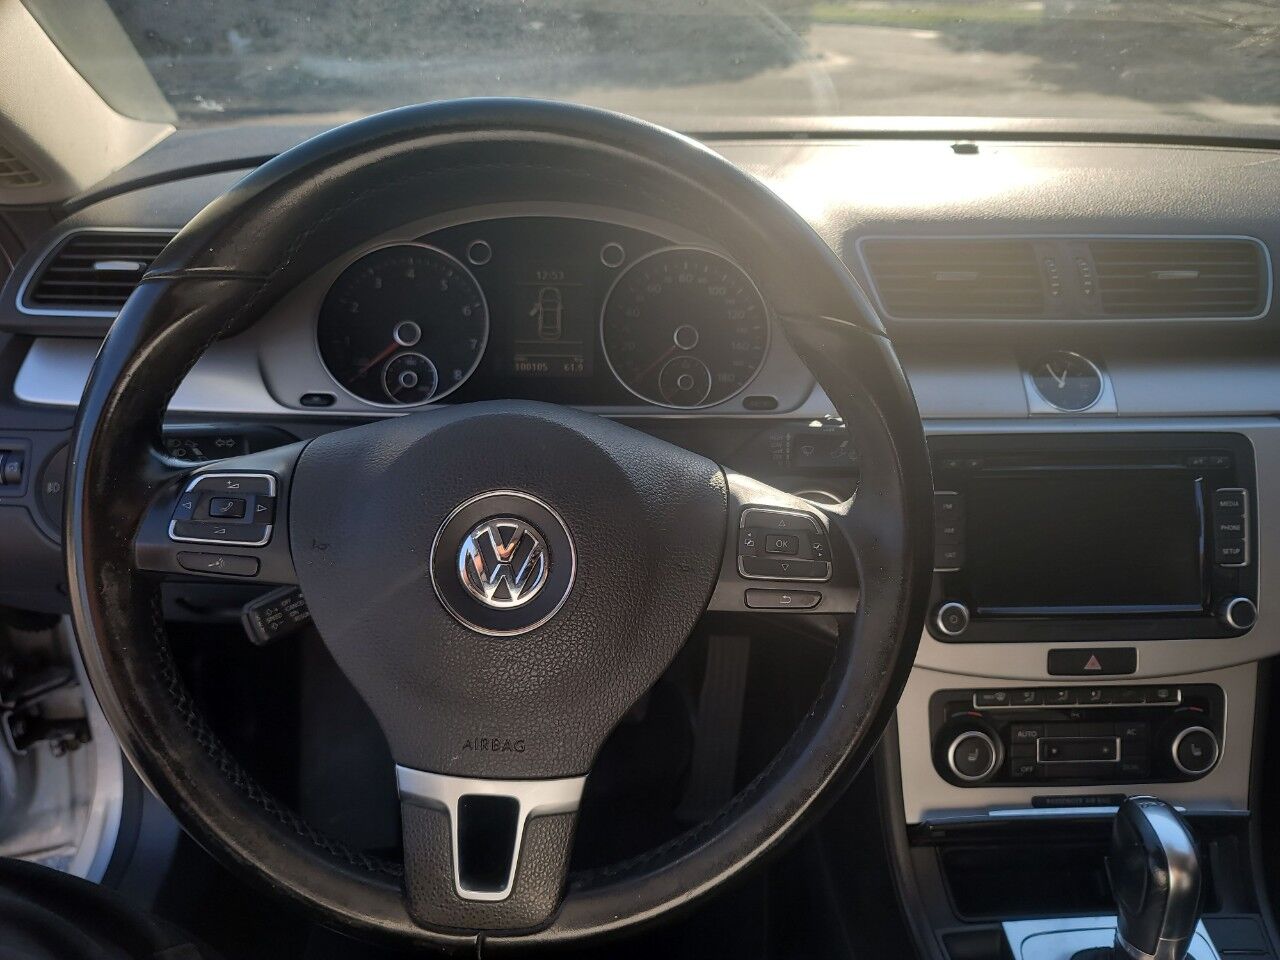 2012 Volkswagen C-Class Sedan - $8,990